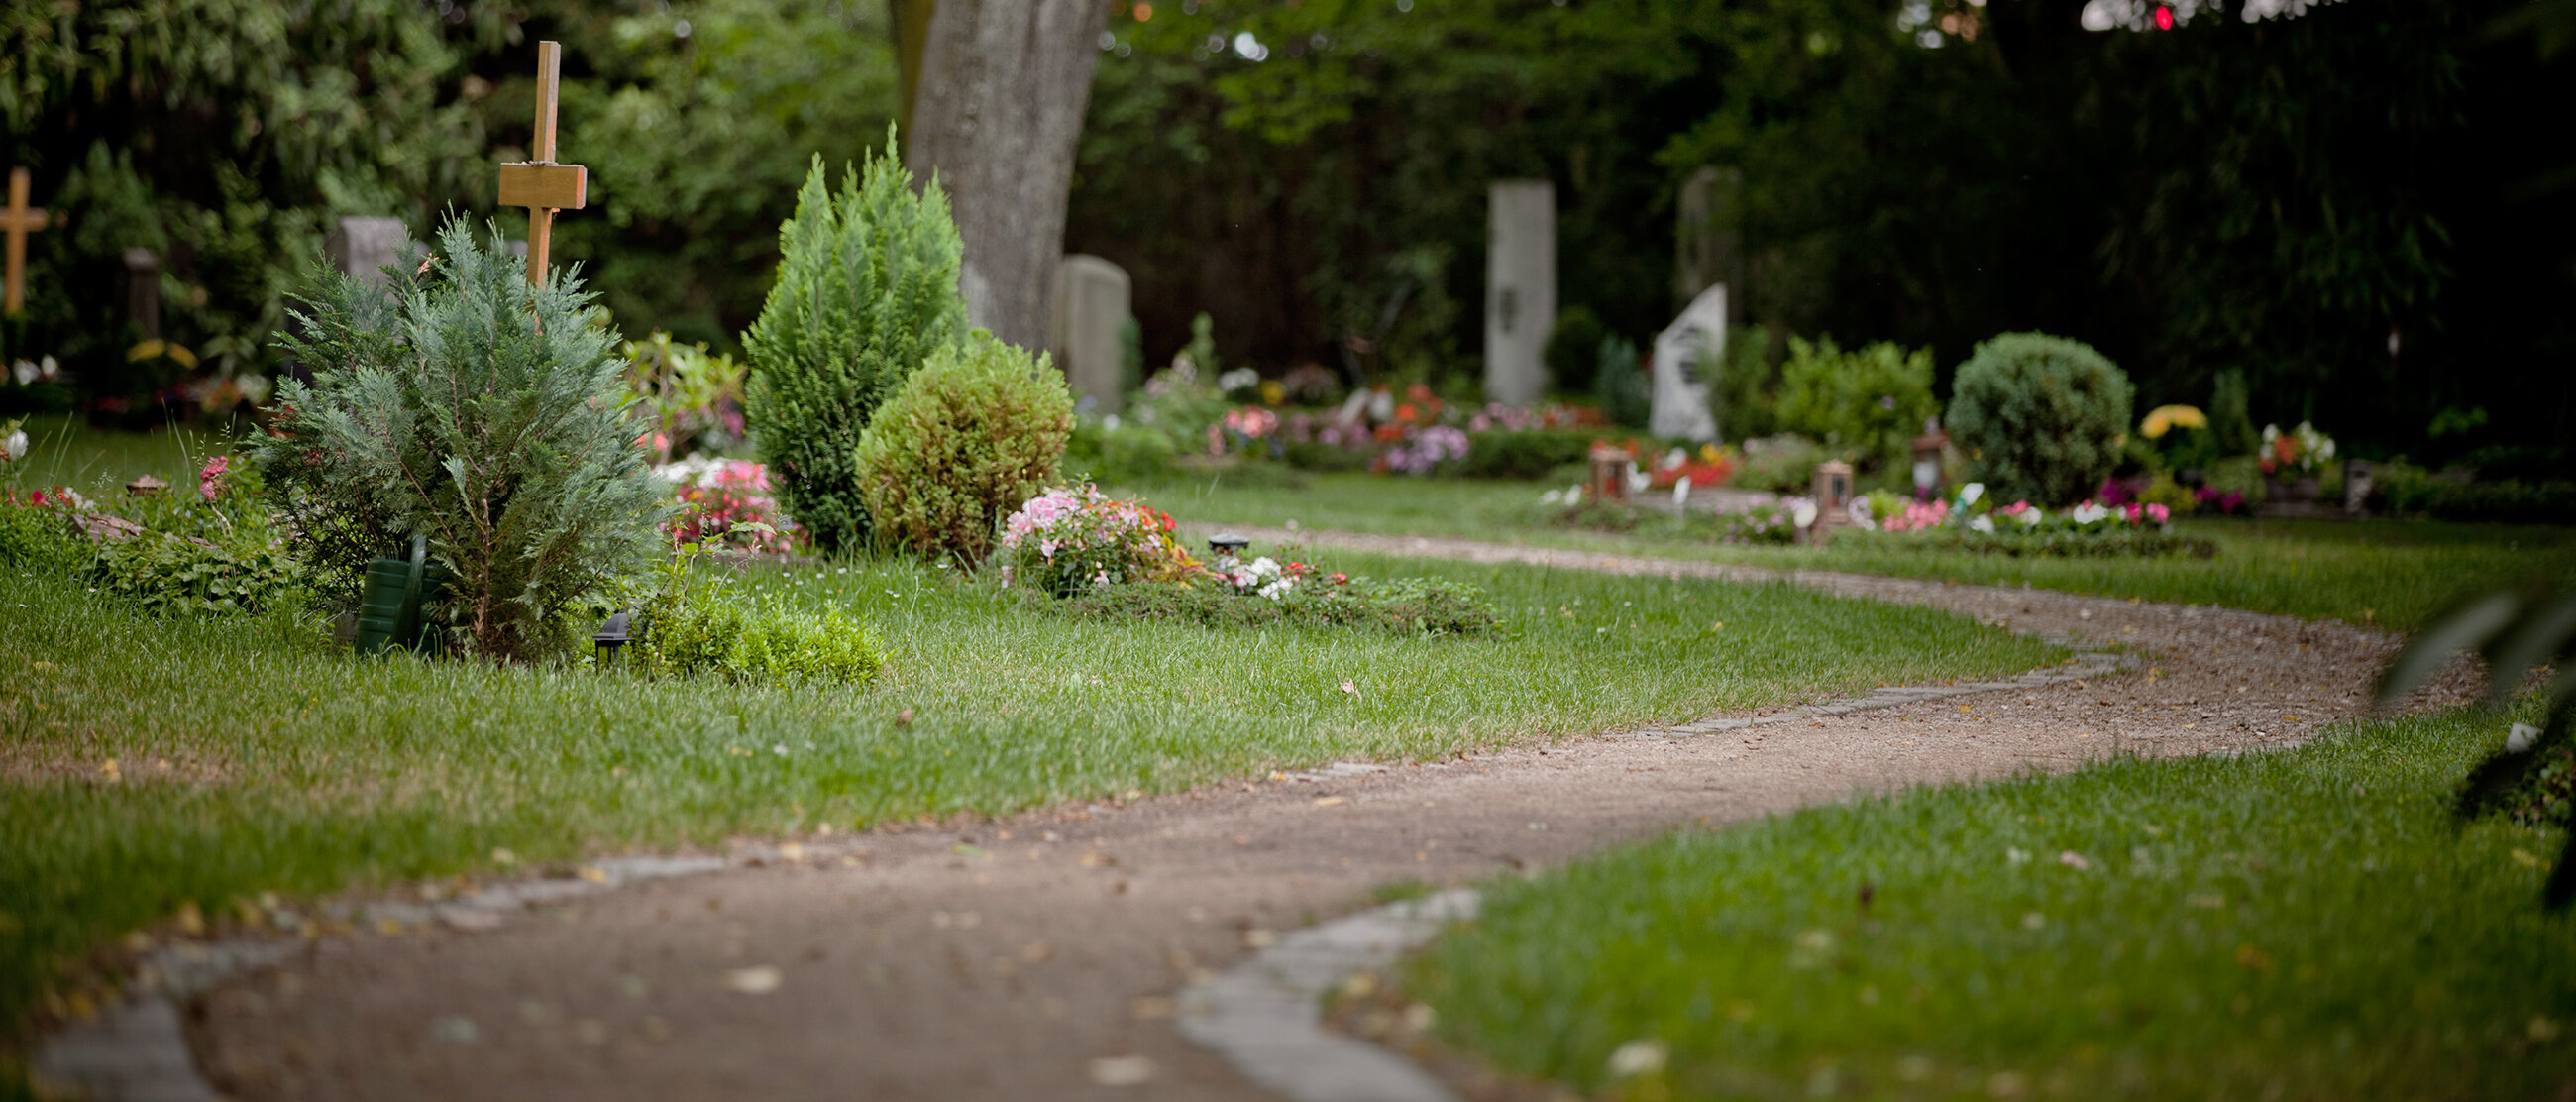 Schöner Weg vorbei an Gräbern auf einem städtischen Friedhof